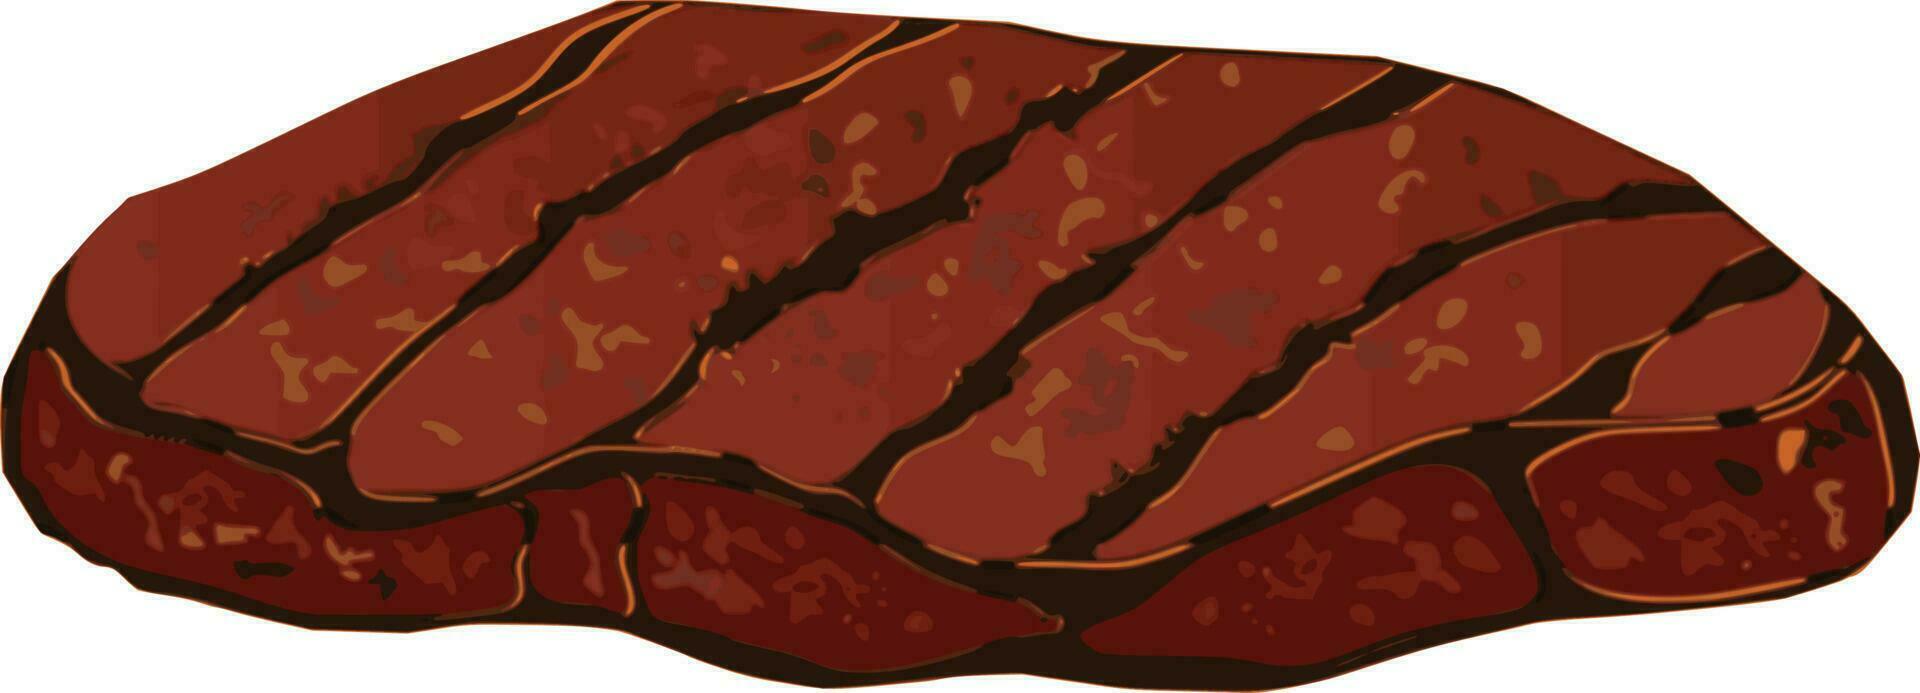 Steak Illustration Vektor